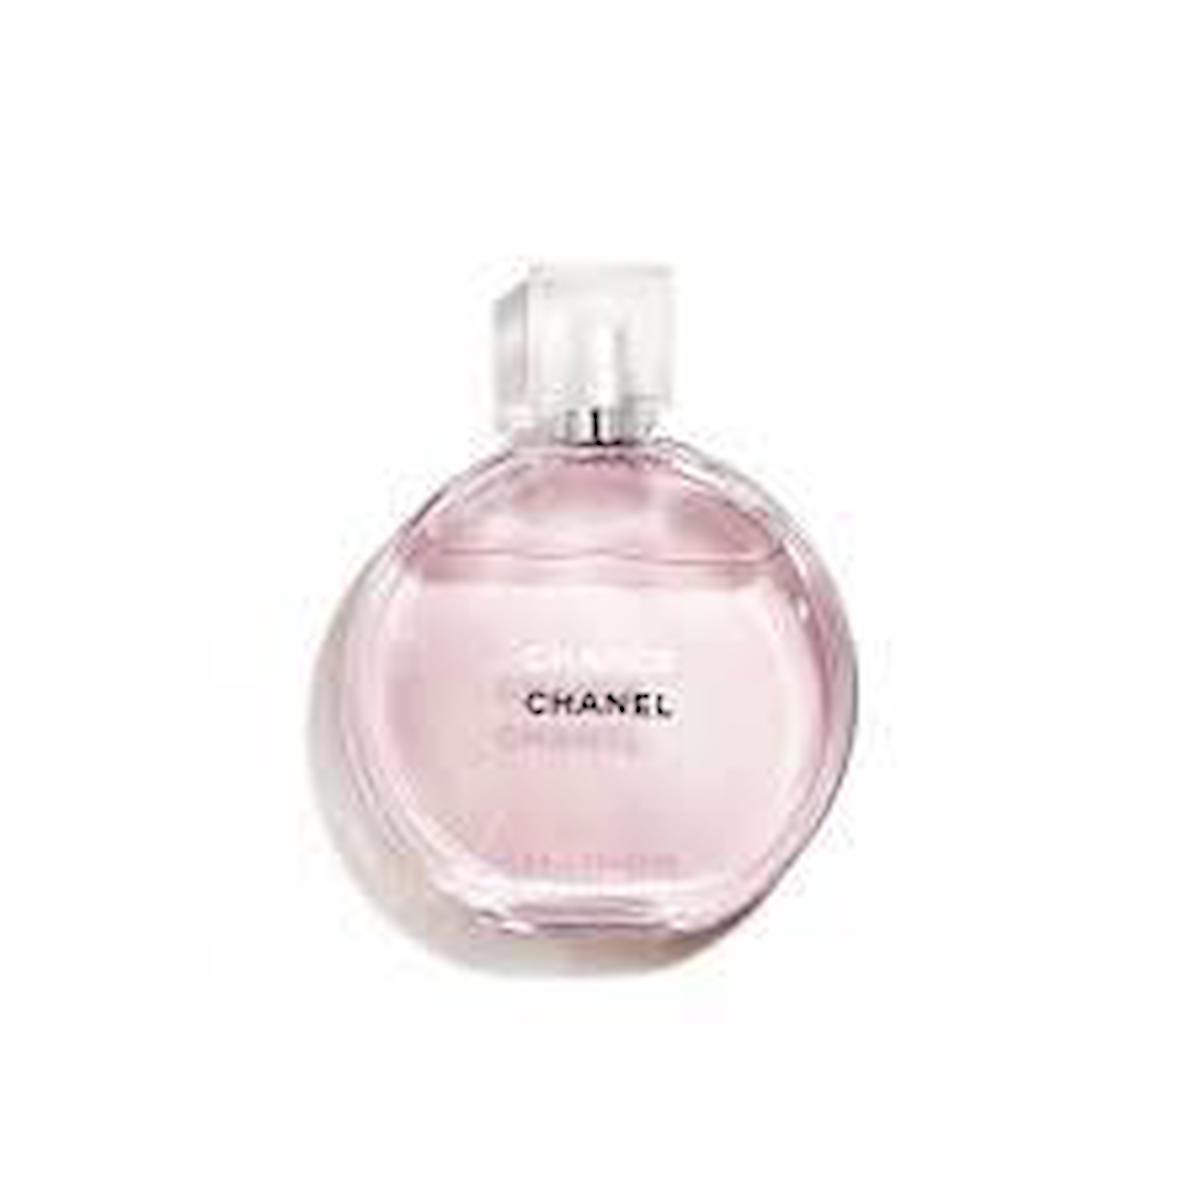 Chanel Eau Tendre EDT Çiçeksi-Meyvemsi Kadın Parfüm 50 ml